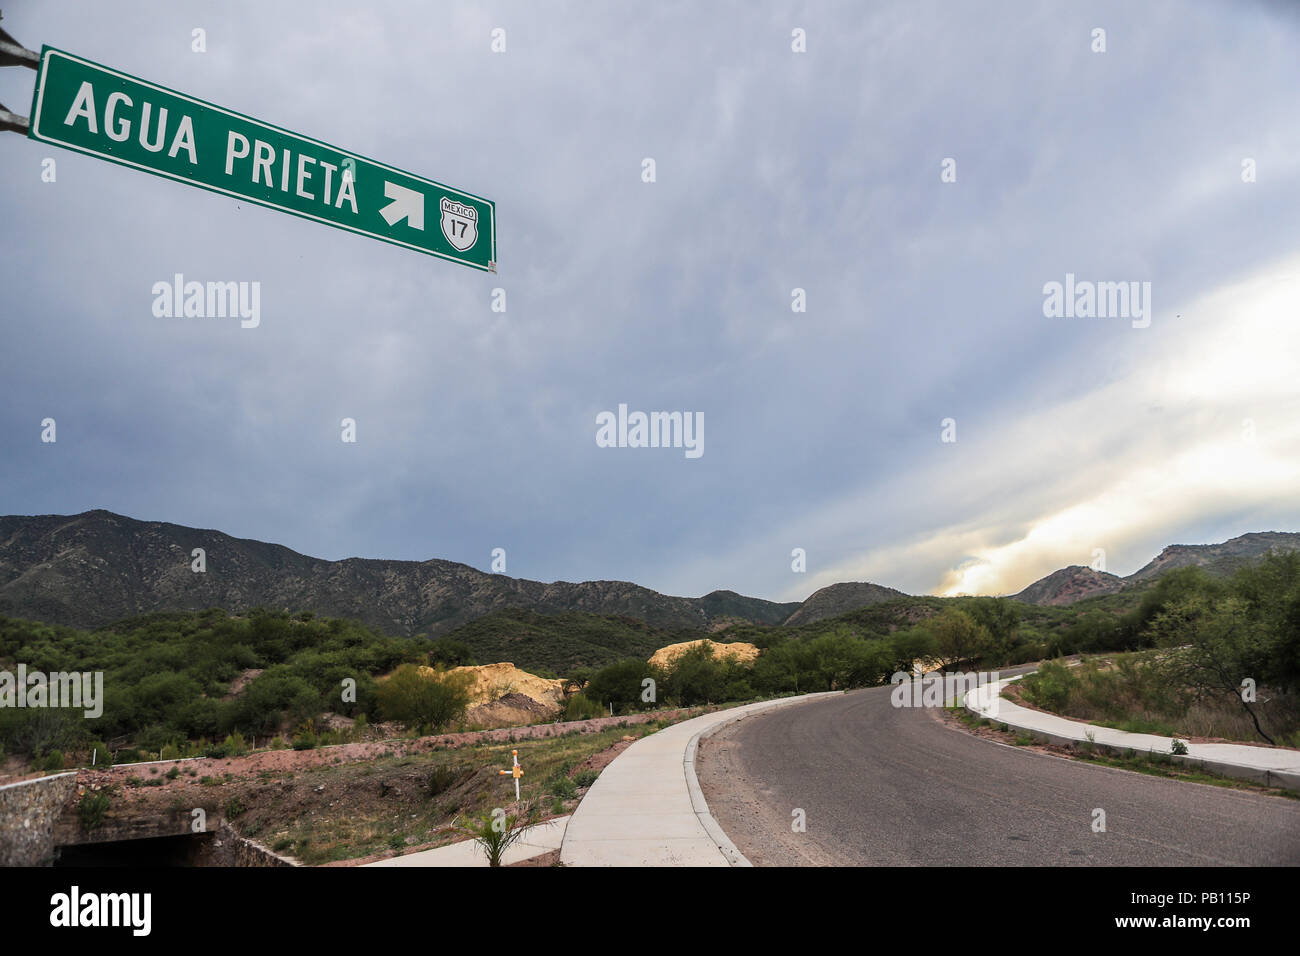 Señalizacion en carretera. Ruta a Agua Prieta. Aspectos del municipio de Nacozari Sonora y sus Alrededores. ** © Foto:LuisGutierrez/NortePhoto Stock Photo